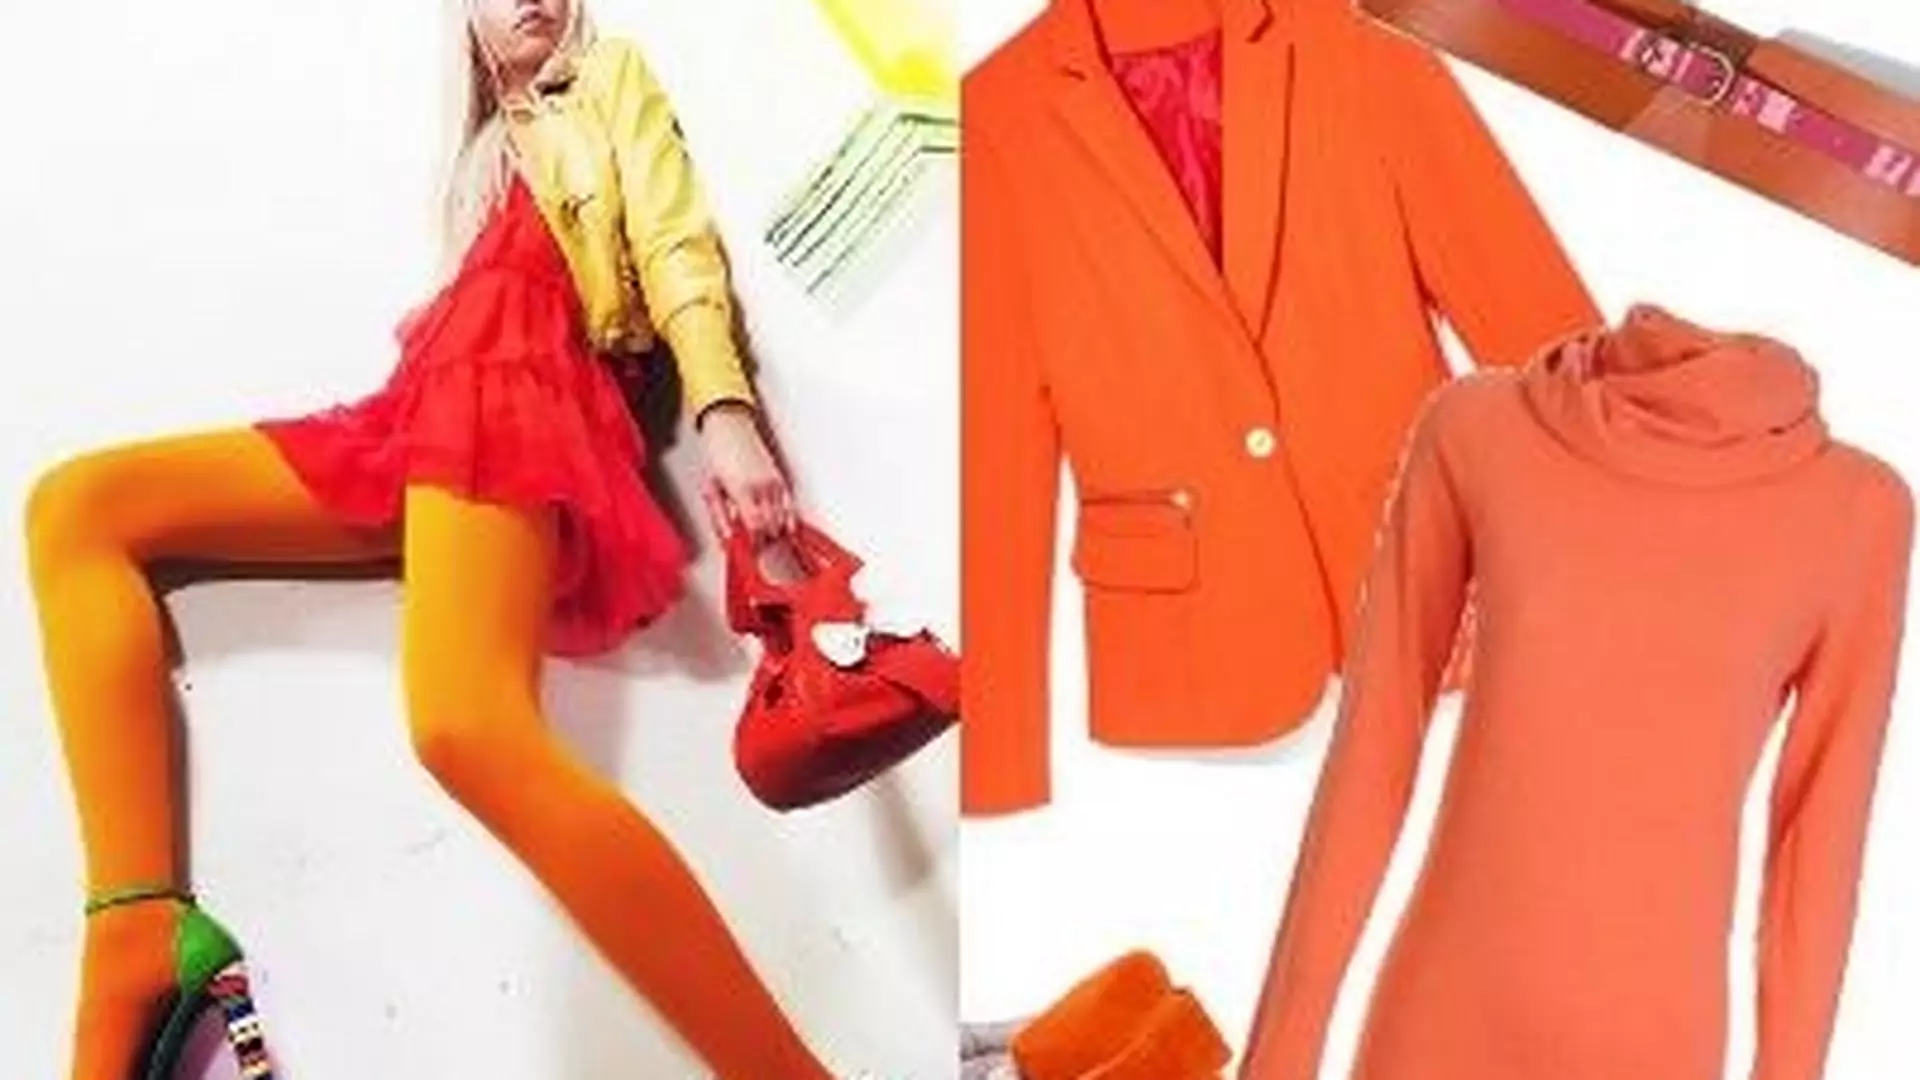 Energetyczna jesień, czyli moda na pomarańcz